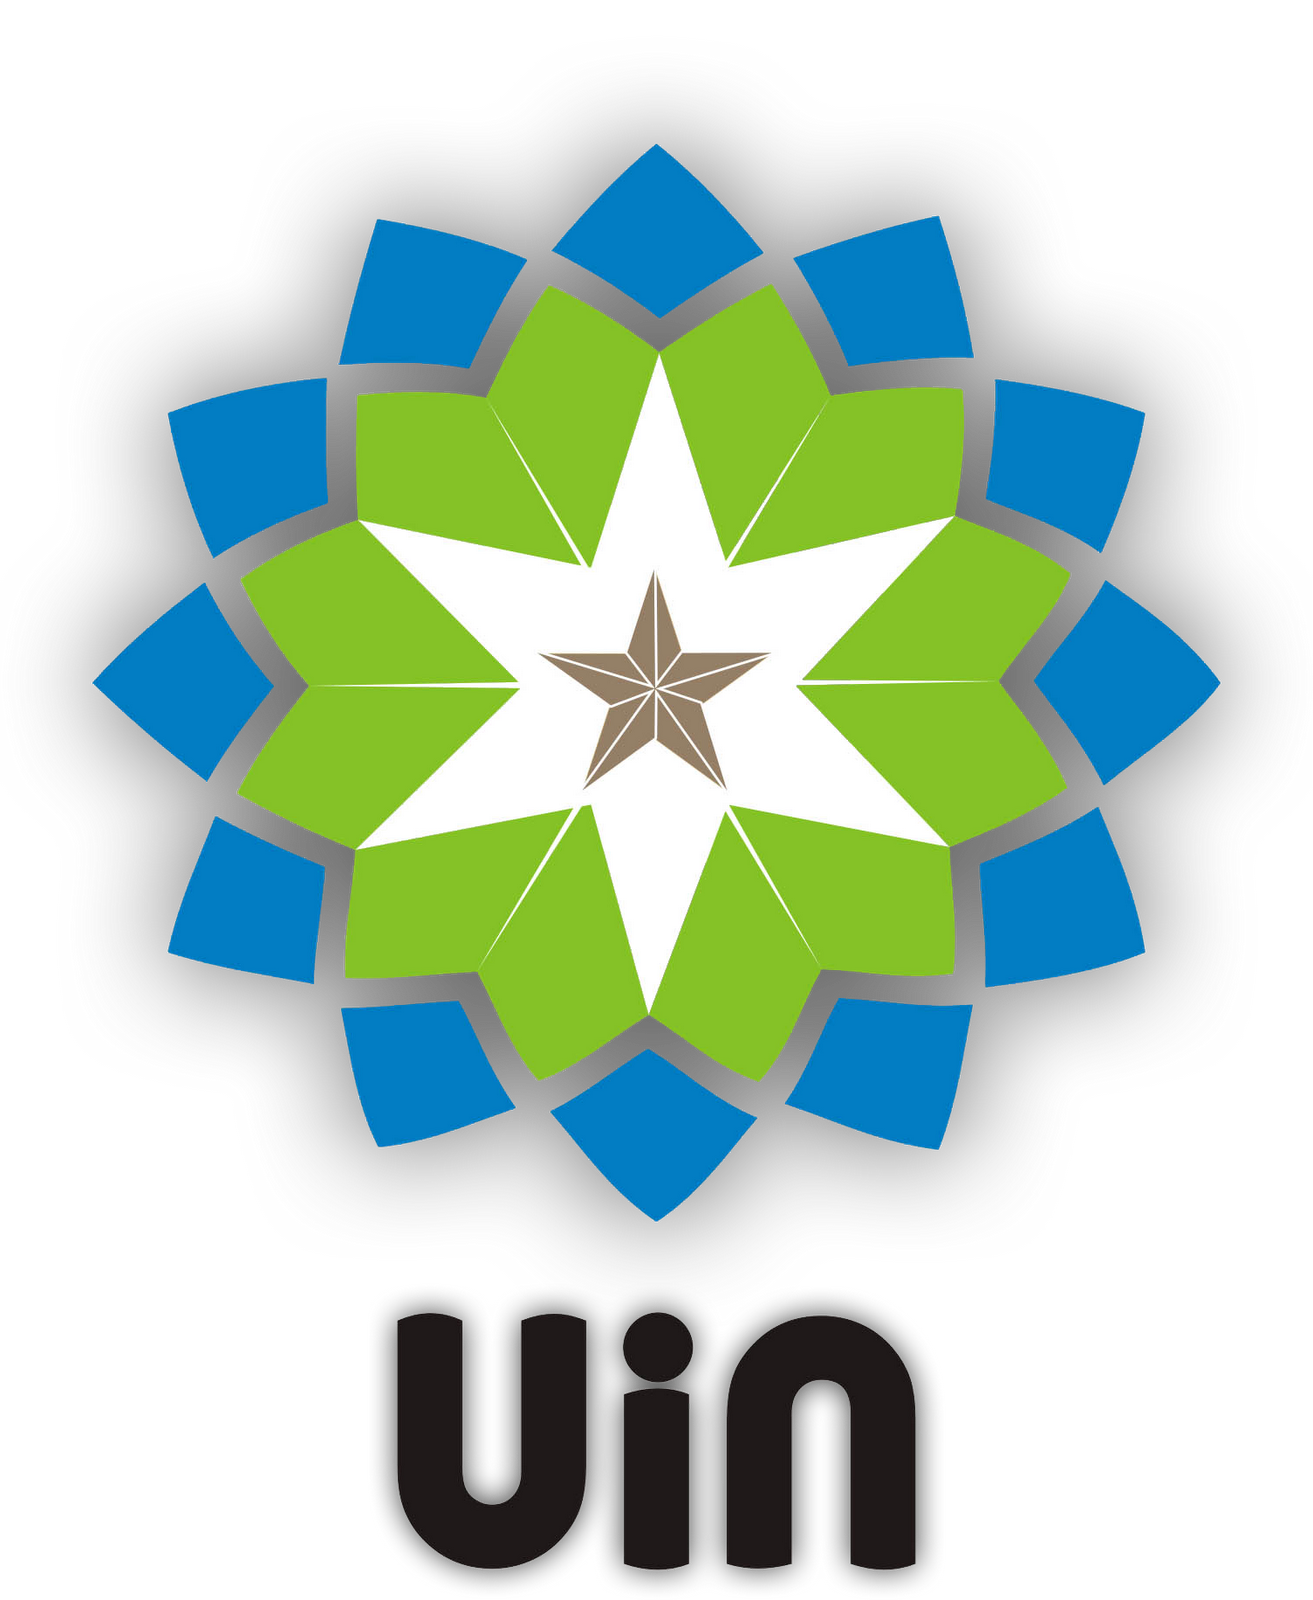 Logo Uin Sunan Gunung Djati Kumpulan Logo Indonesia Images And Photos ...